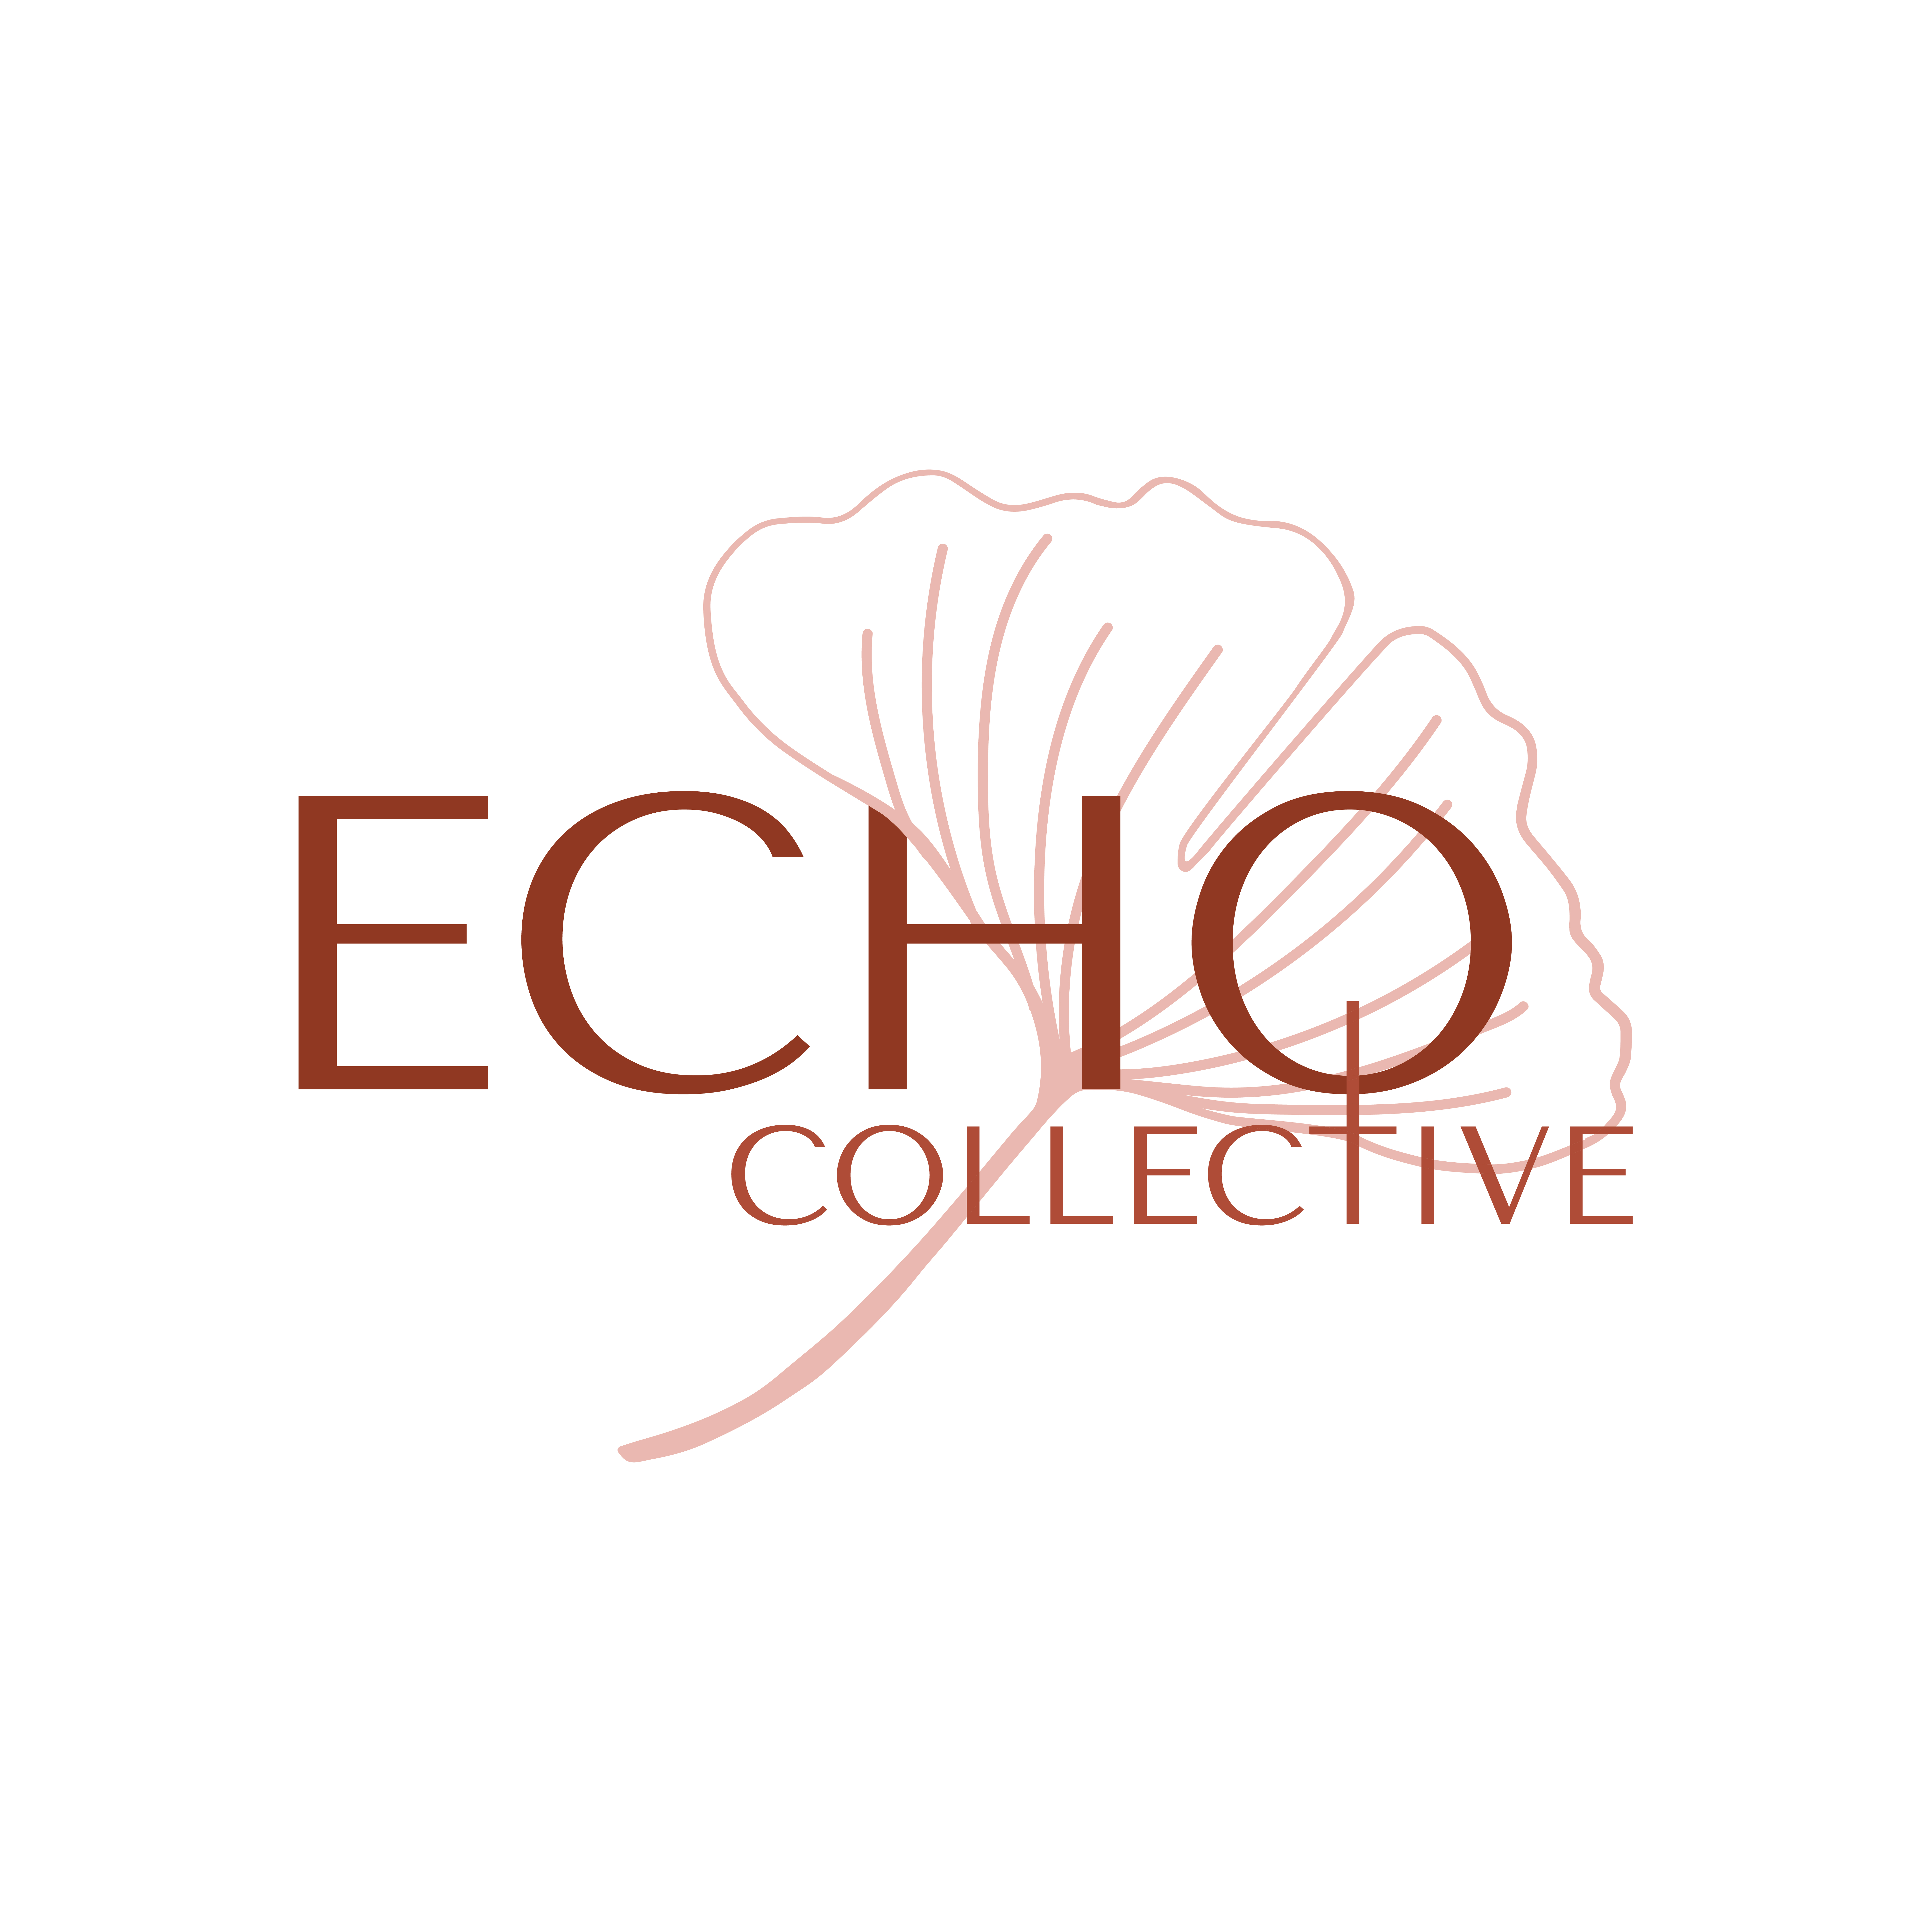 Echo Collective logo